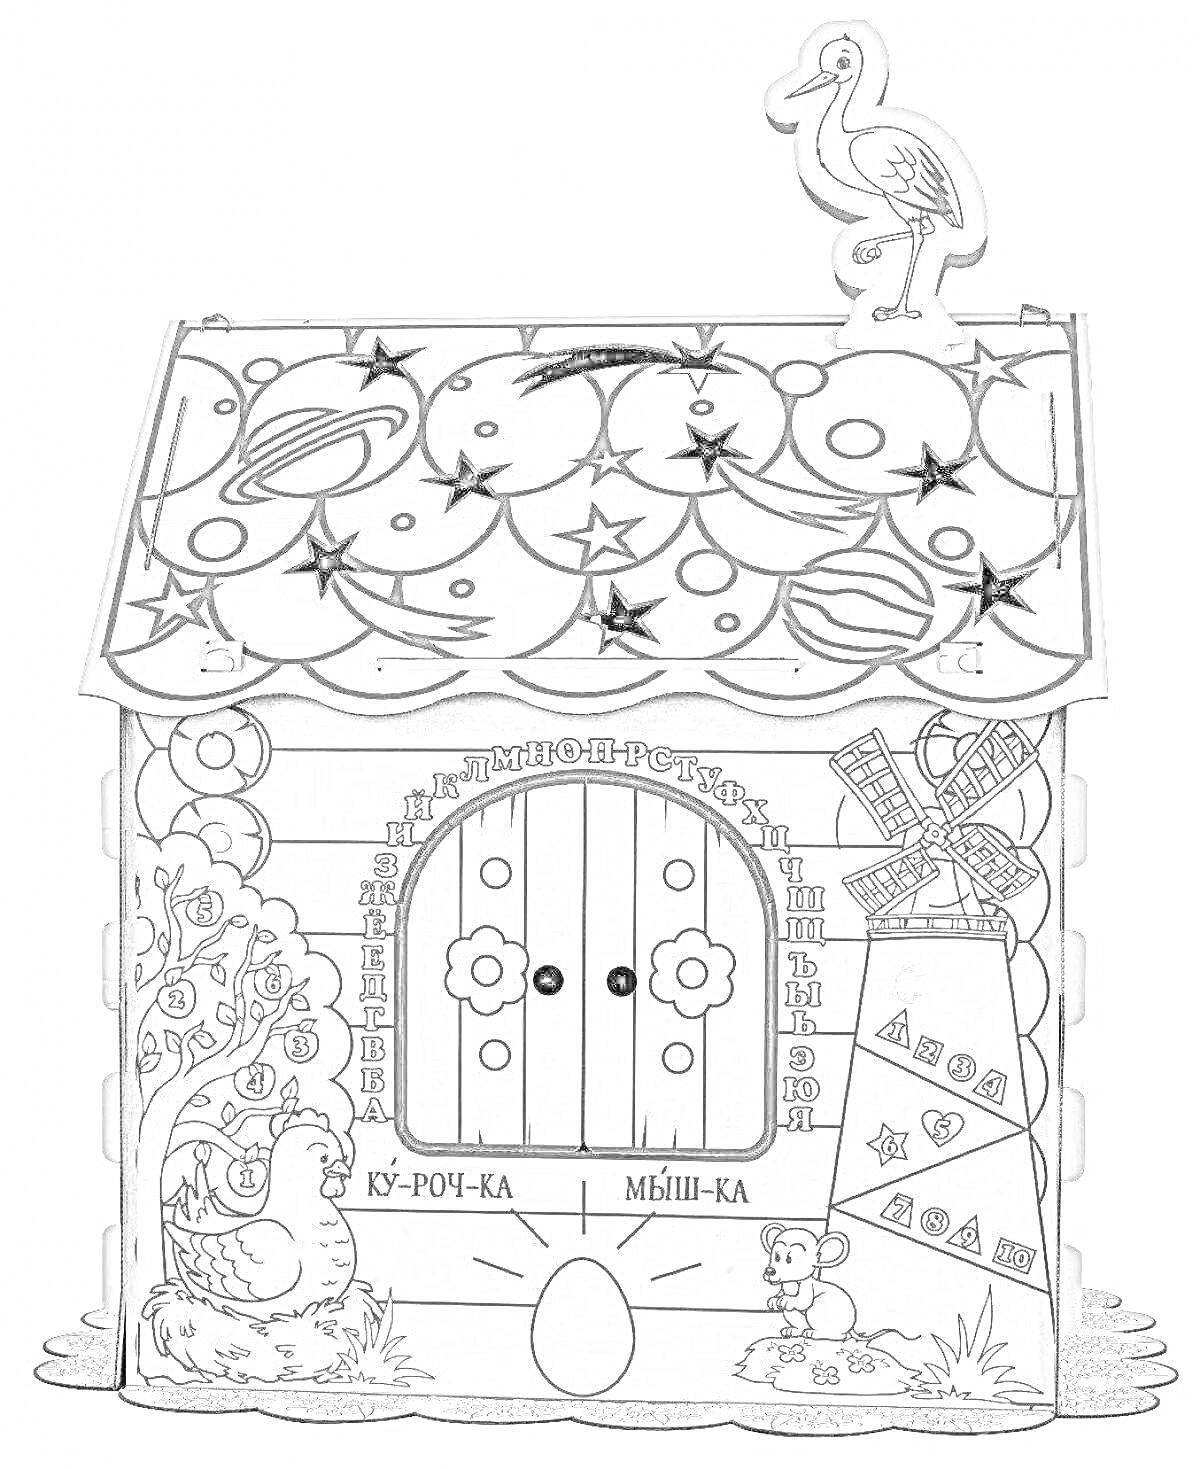 Раскраска Картонный дом раскраска с дверью, петухом на крыше, декоративным деревом, яйцом перед домом, аистом на крыше и фонтаном в углу.